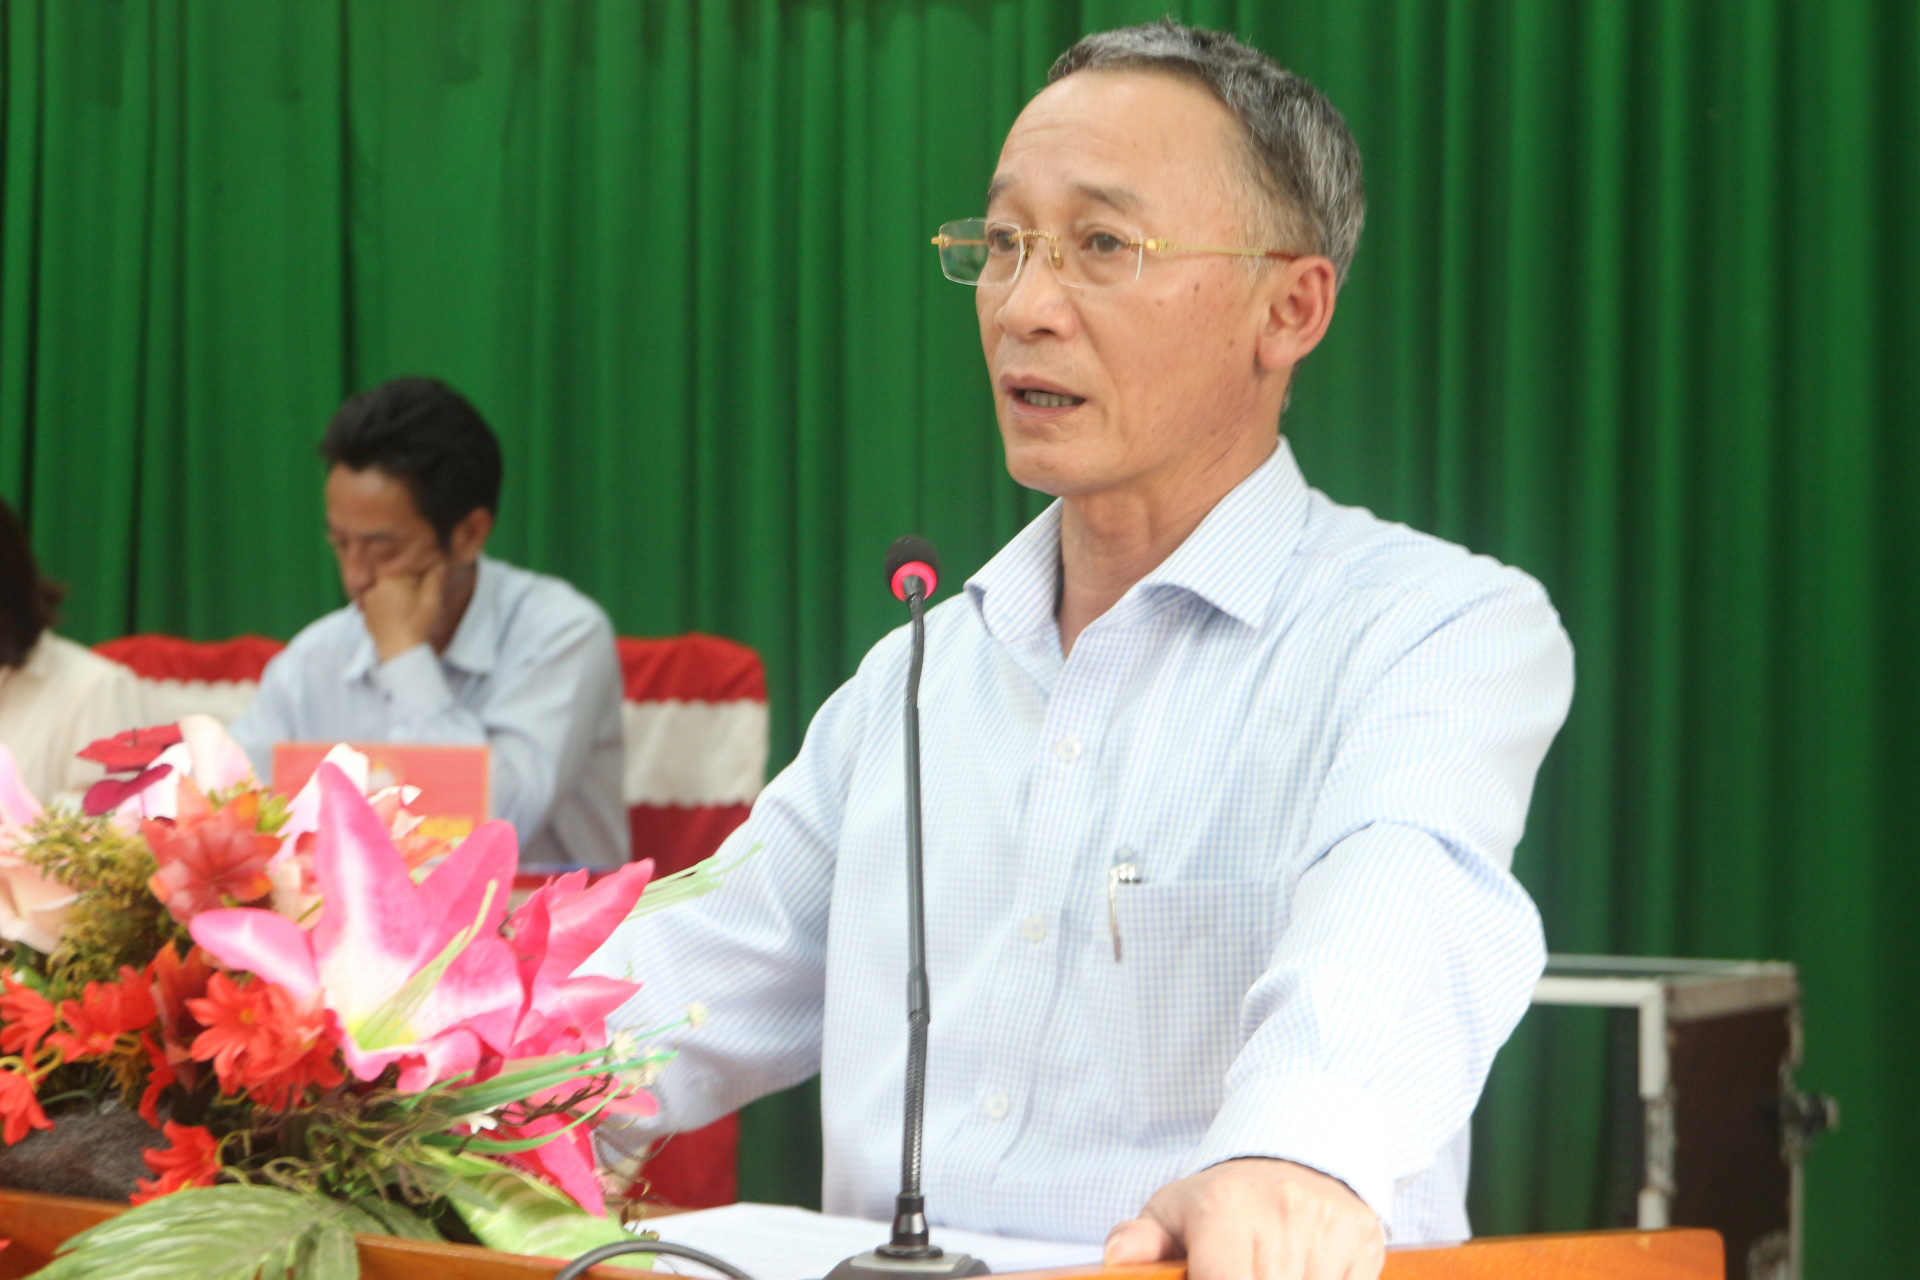 Phó Bí thư Tỉnh ủy, Chủ tịch UBND tỉnh Trần Văn Hiệp tiếp thu, ghi nhận và giải thích rõ ràng các kiến nghị của cử tri